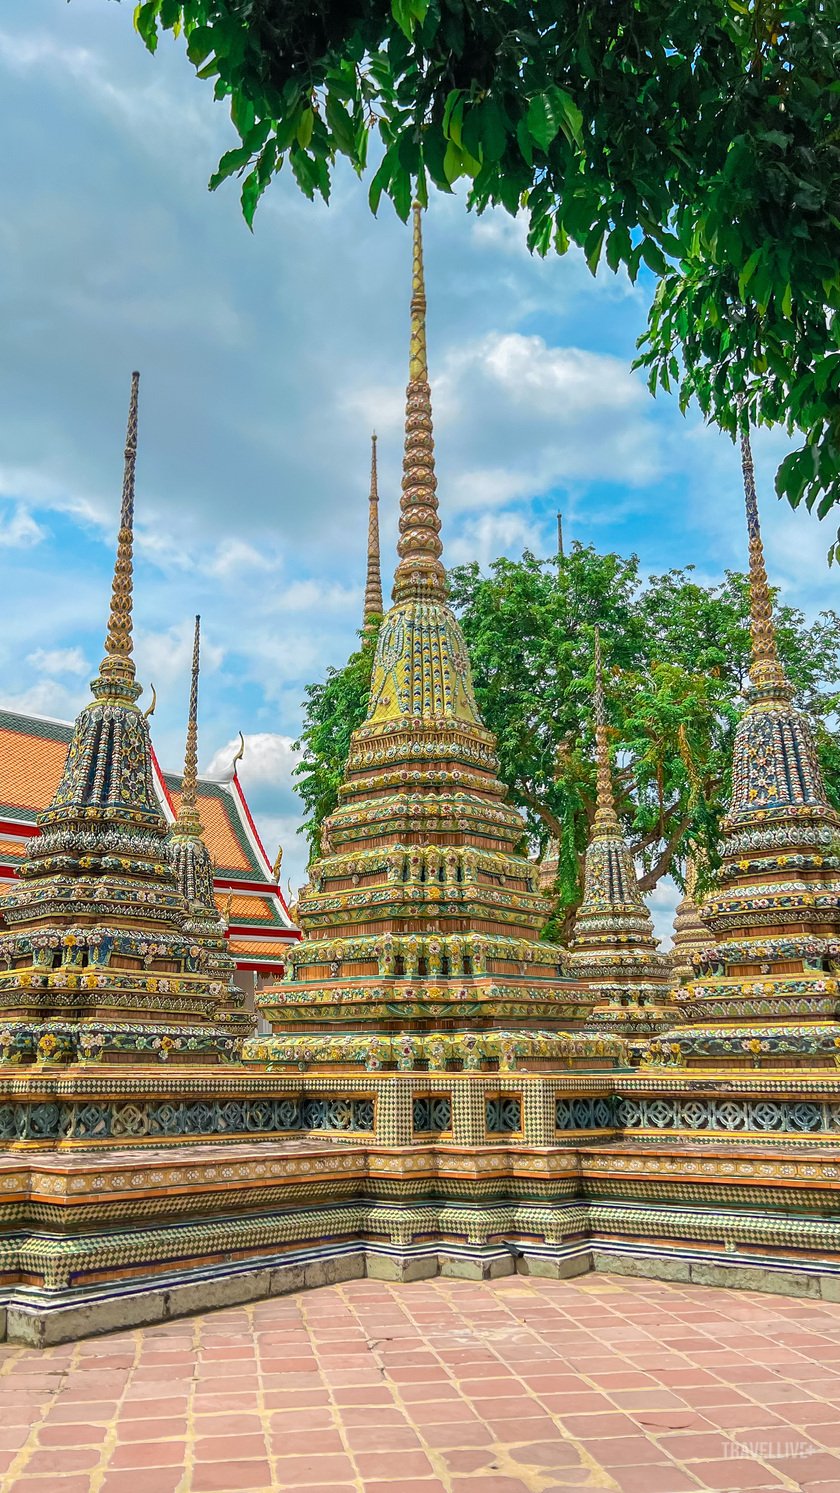 Tổng thể Wat Pho có 91 tháp thờ hình tròn, bao gồm 71 tháp nhỏ và 20 tháp lớn.